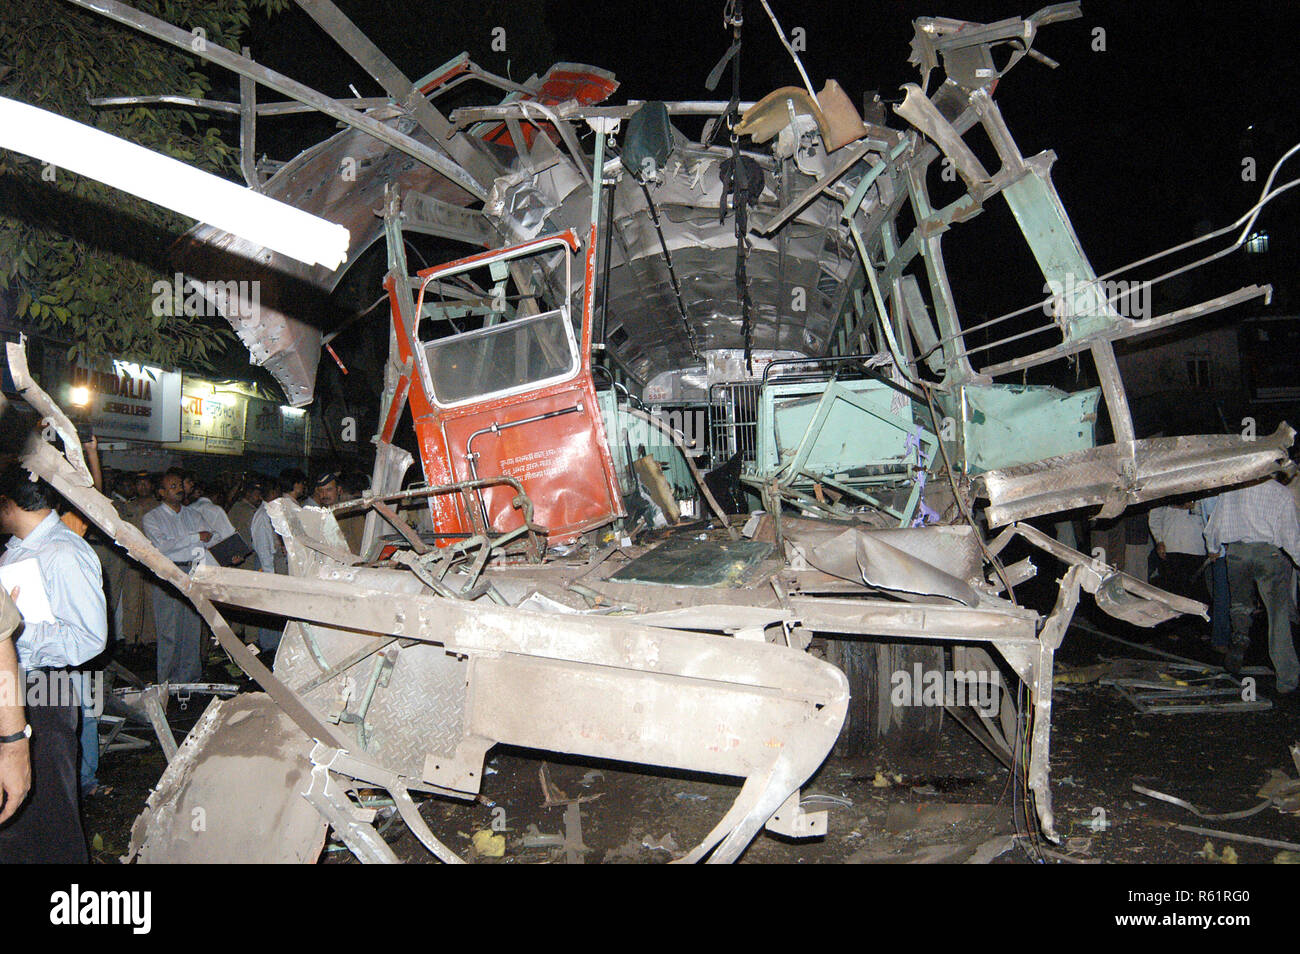 Bombenanschlag auf Bus in der Nähe von ghatkopar Telefon Exchange Fahrzeug Auto und Motorrad schwer beschädigt, Mumbai, Maharashtra, Indien. Stockfoto